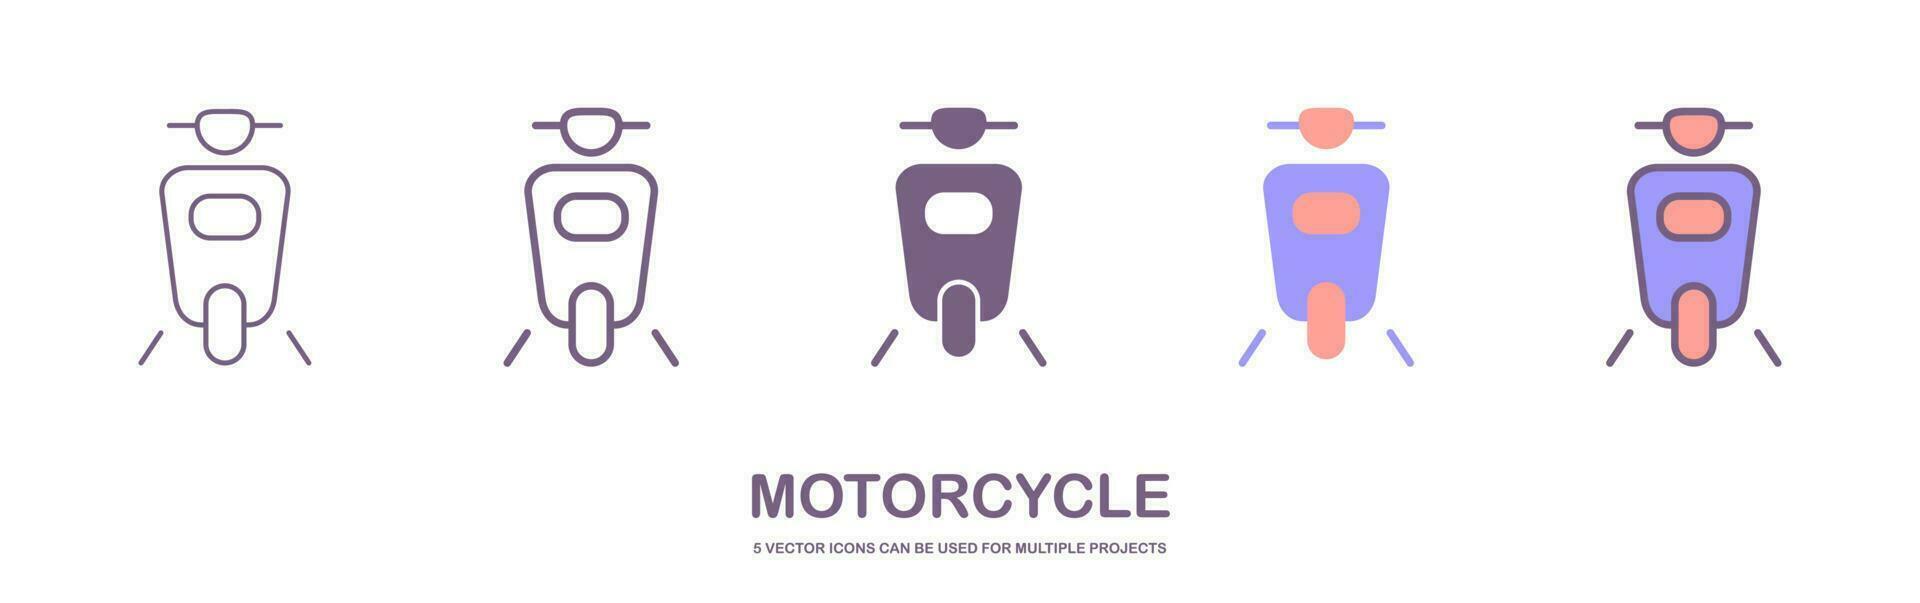 grande isolado motocicleta vetor colorida ícones definir, plano ilustrações do vários tipo motocicletas. isolado em branco fundo